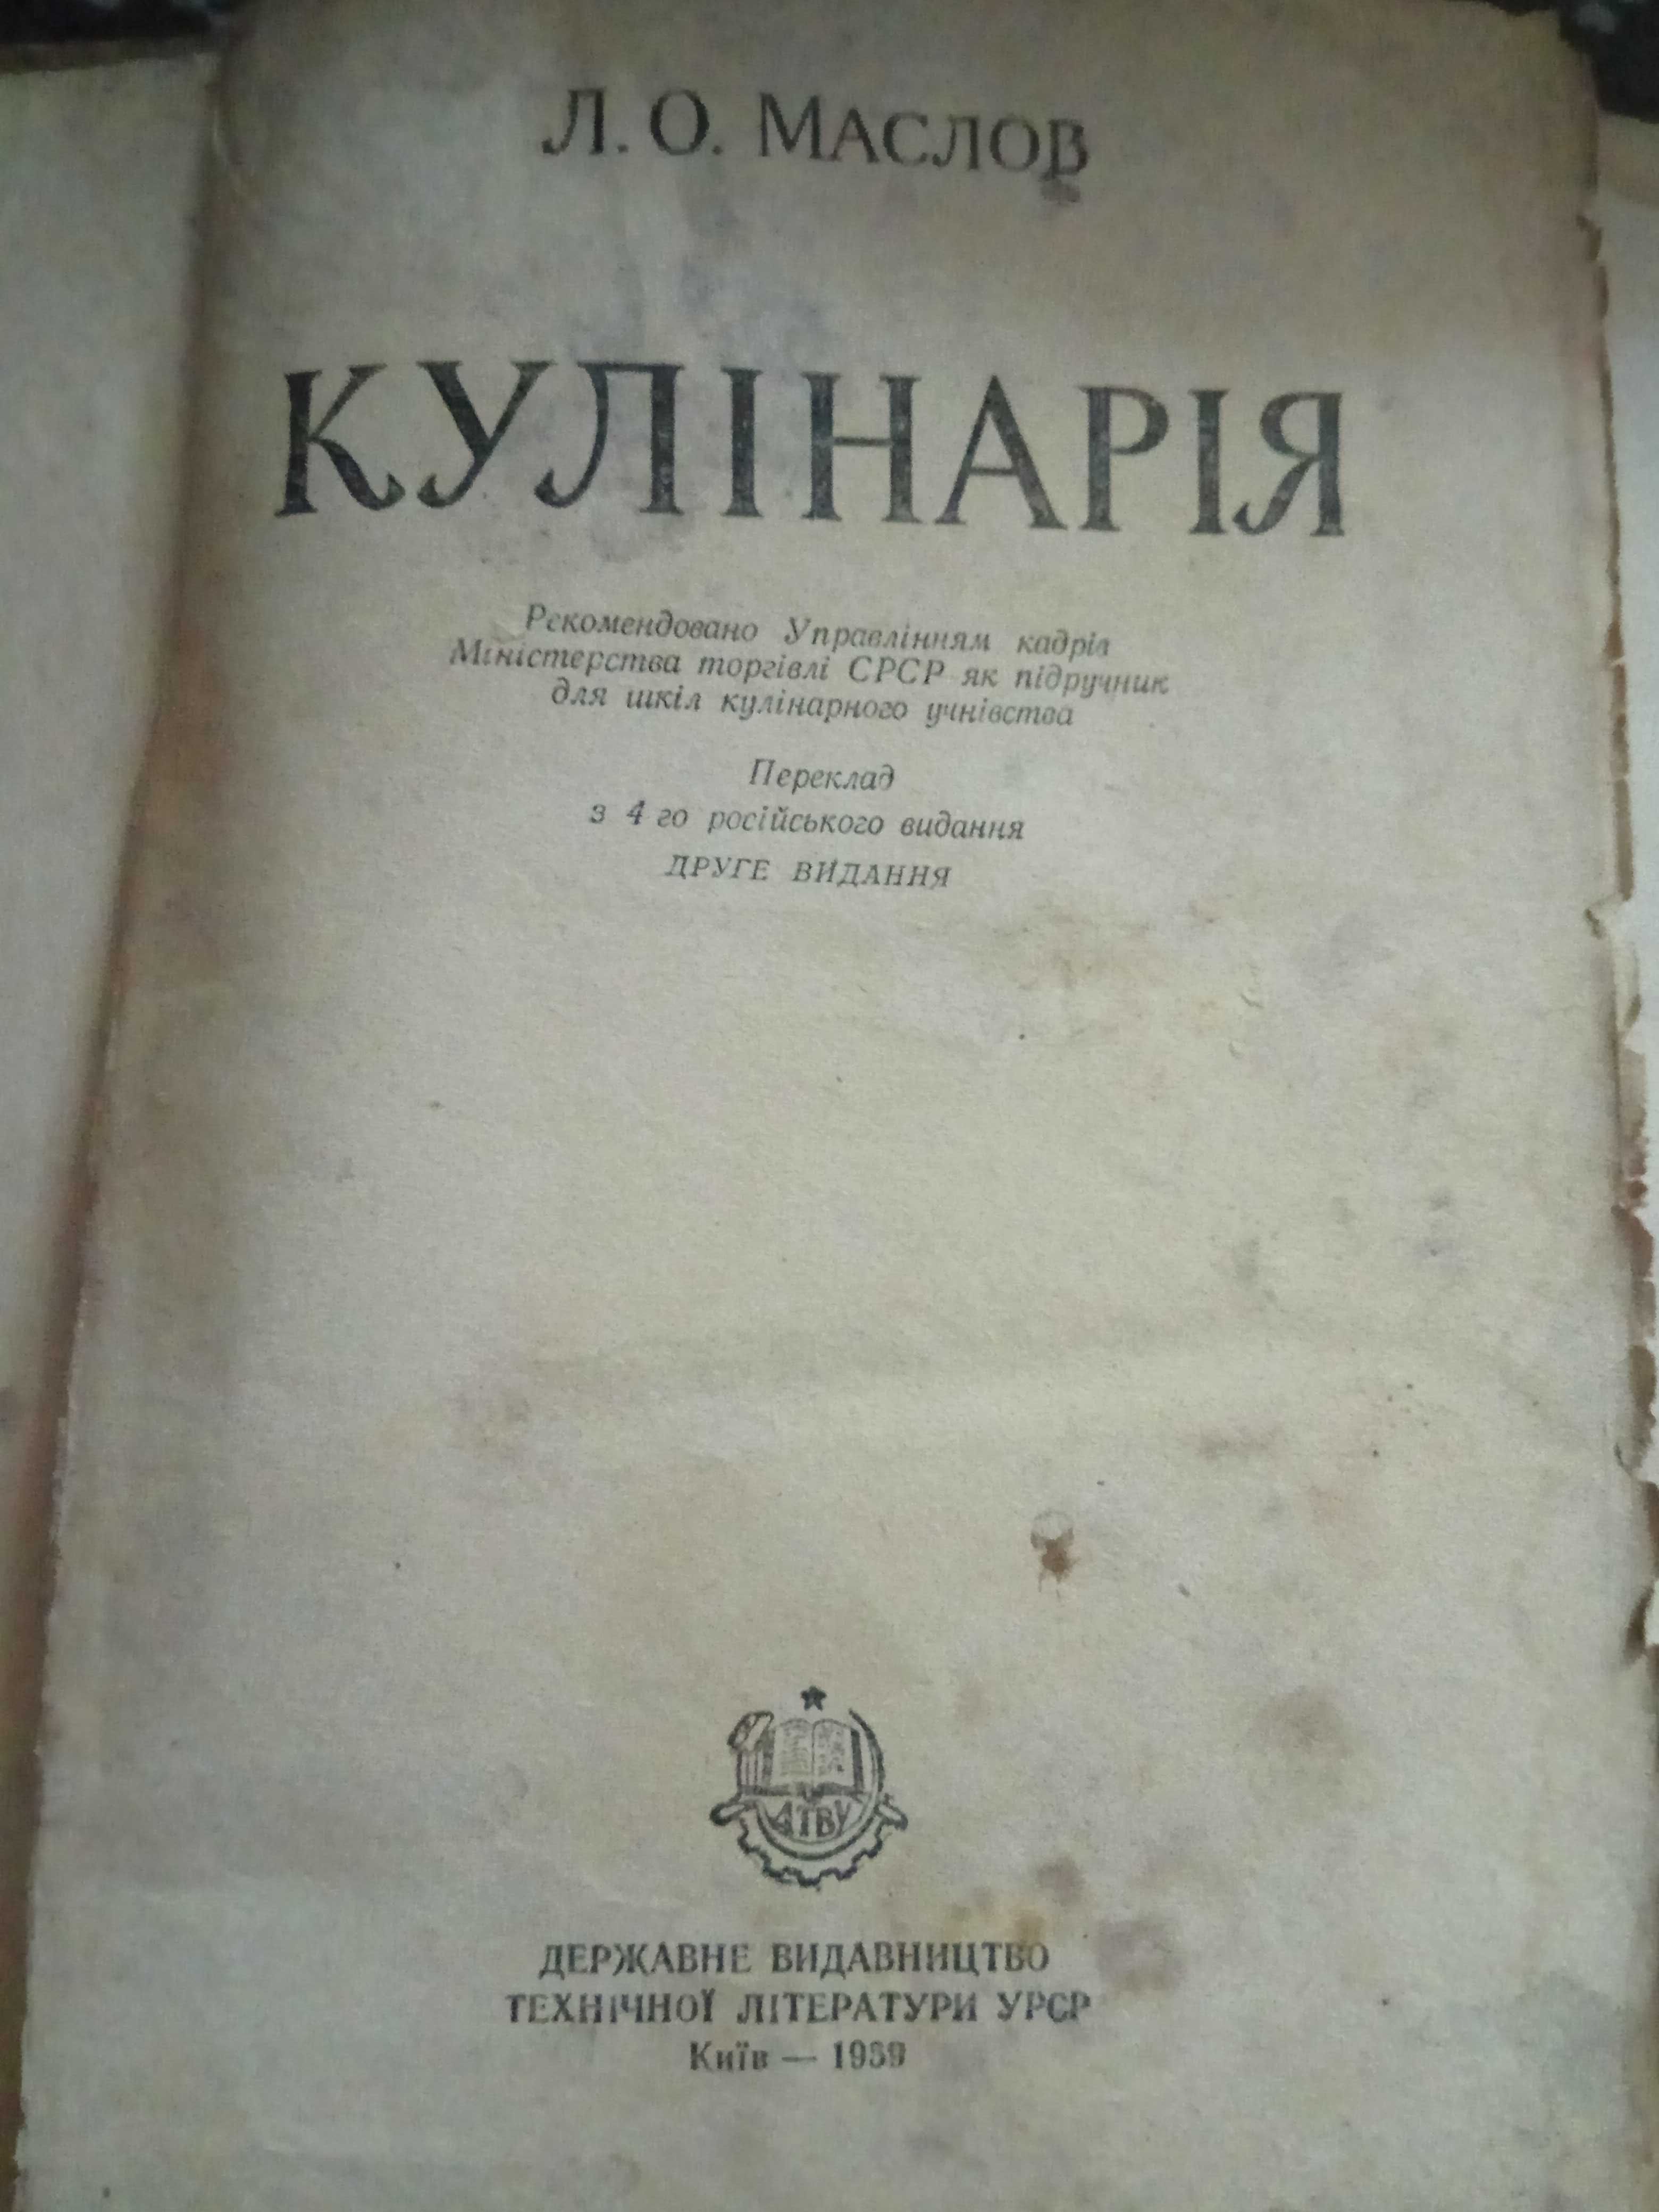 Е. Евтушенко Стихотворения, поэмы 1 -ый том и книги Кулинария 1959г.